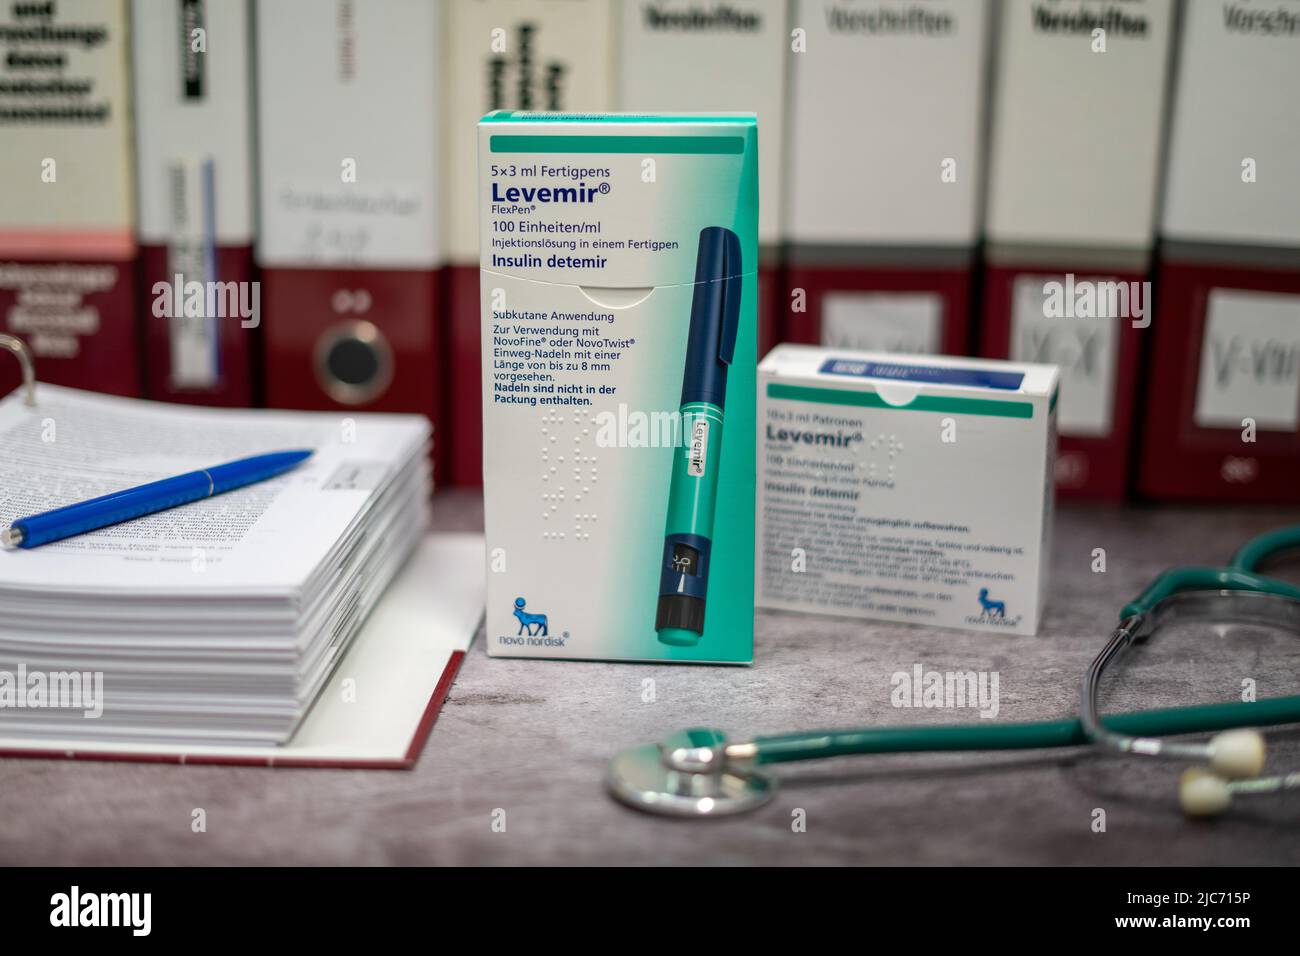 Levemir-Box mit basalem Insulin zur Behandlung von Typ-2-Diabetes. Stockfoto